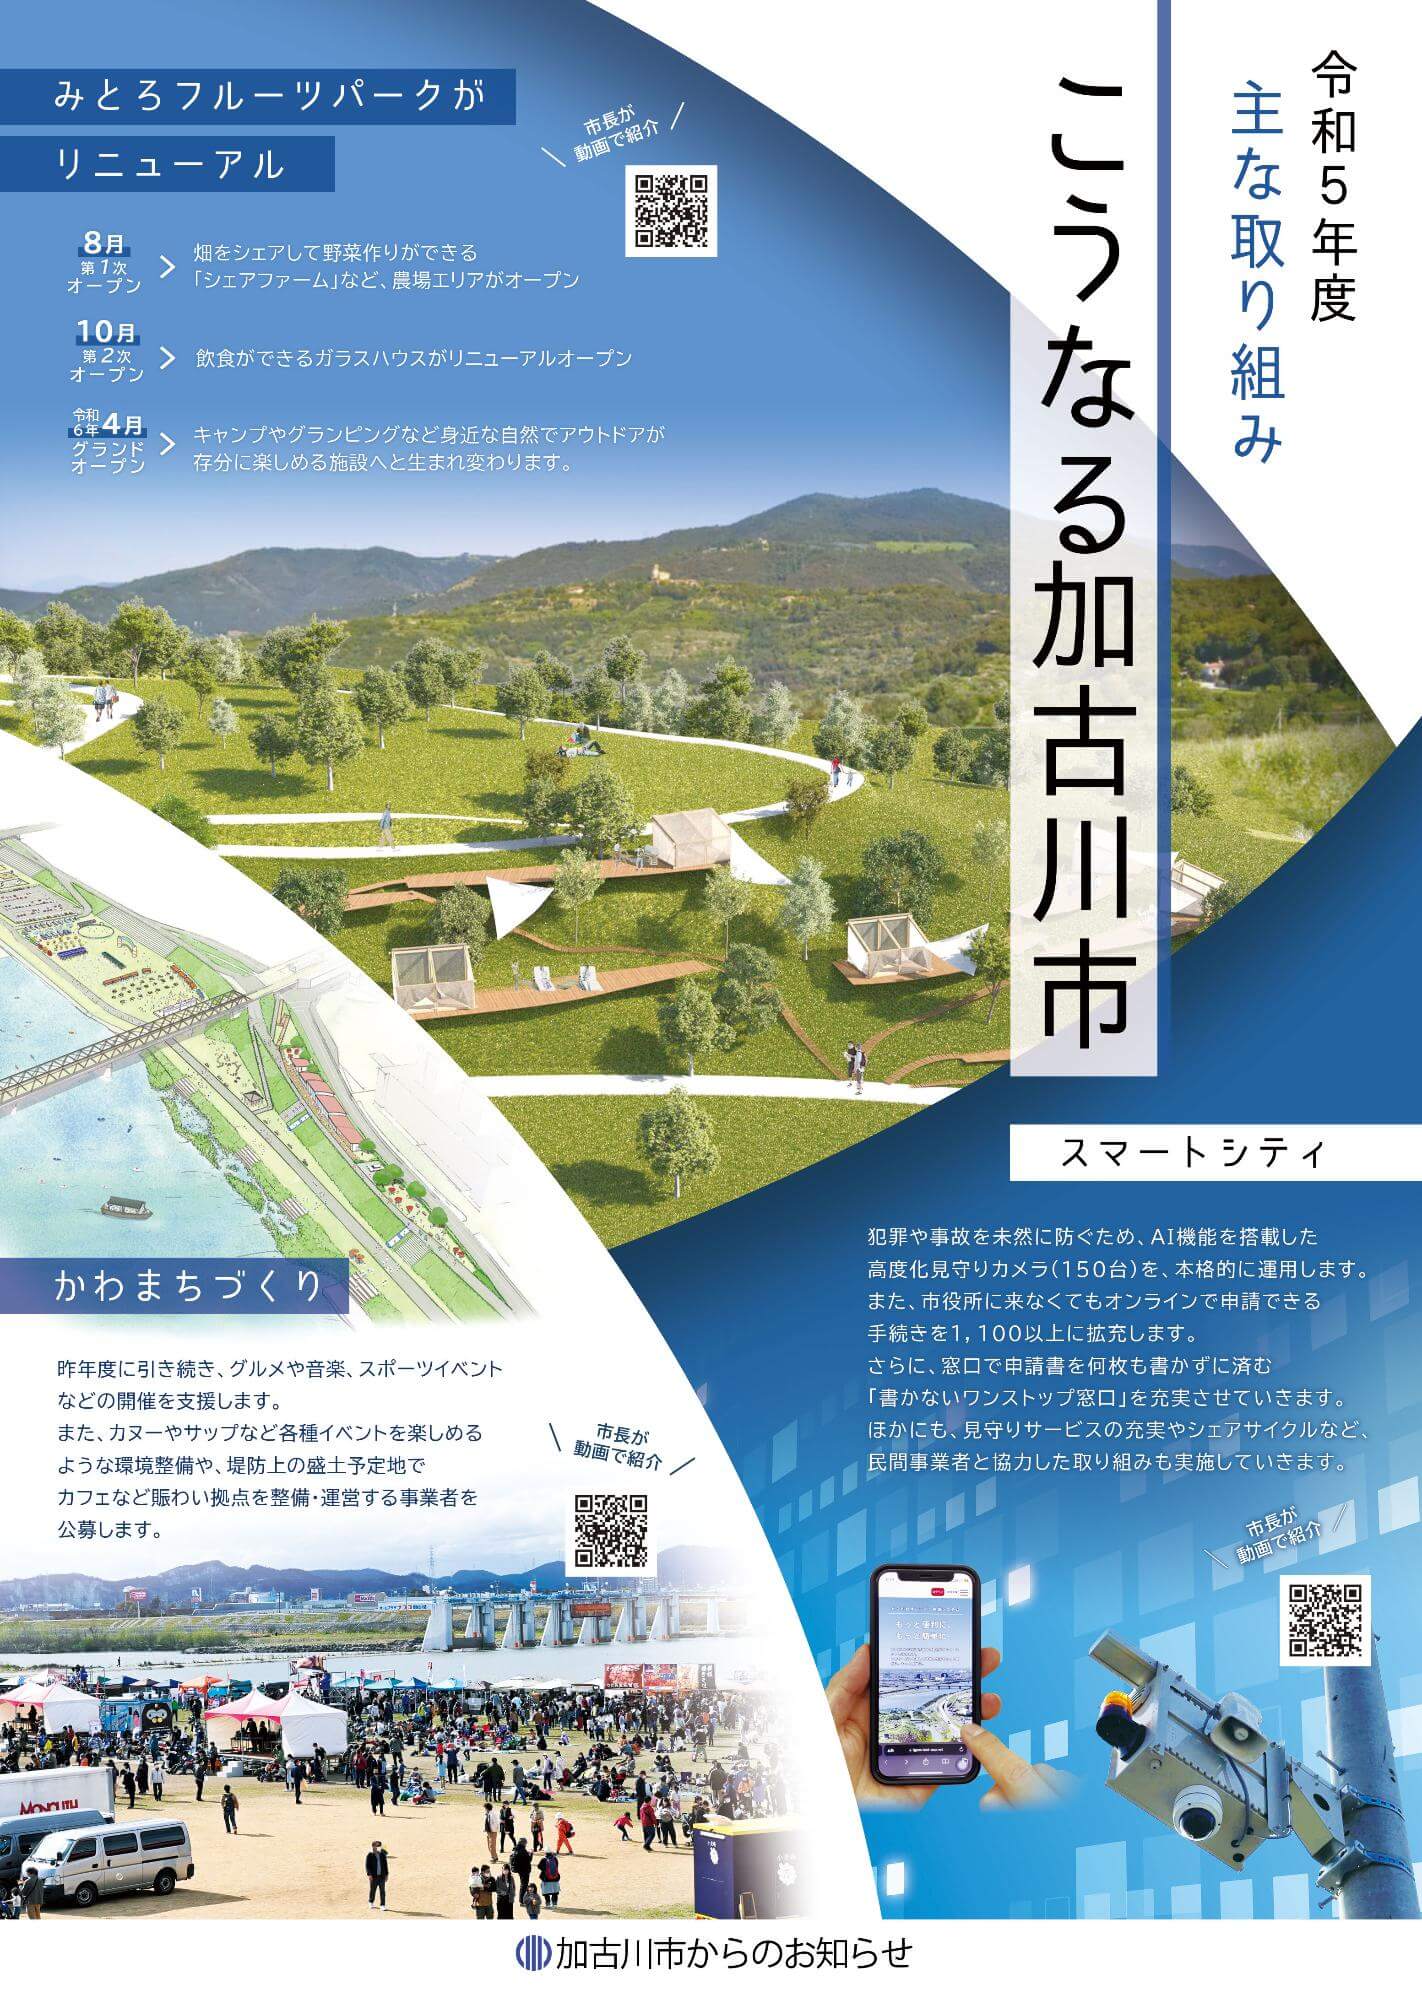 加古川市の令和5年度の主な取り組みを紹介したシティプロモーションペーパー表